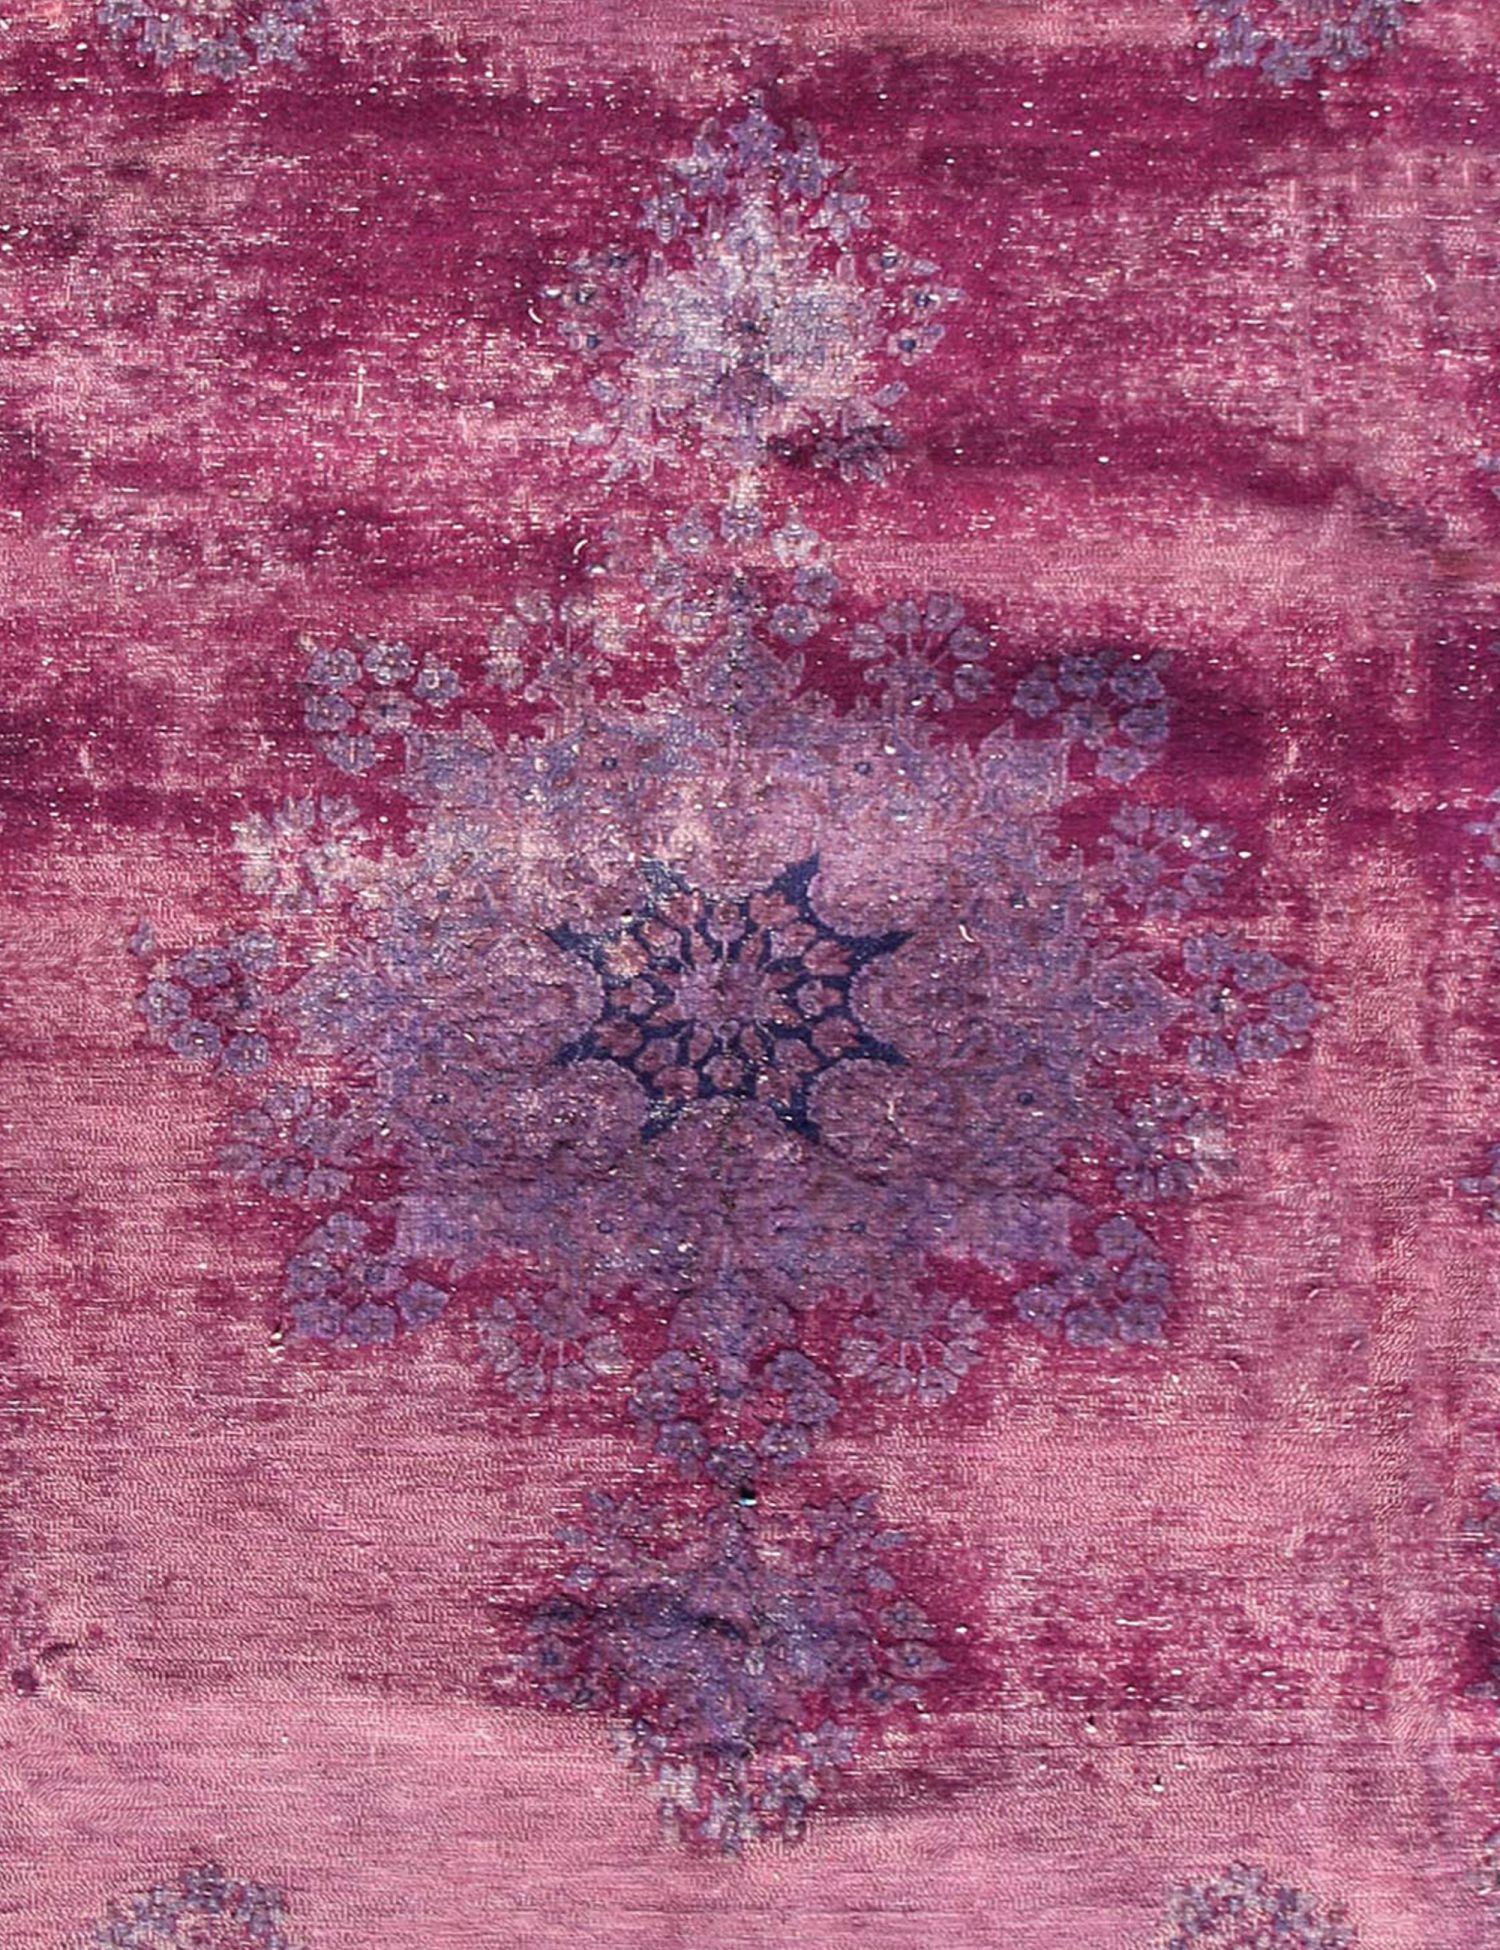 Rund  Vintage Teppich  lila <br/>230 x 230 cm